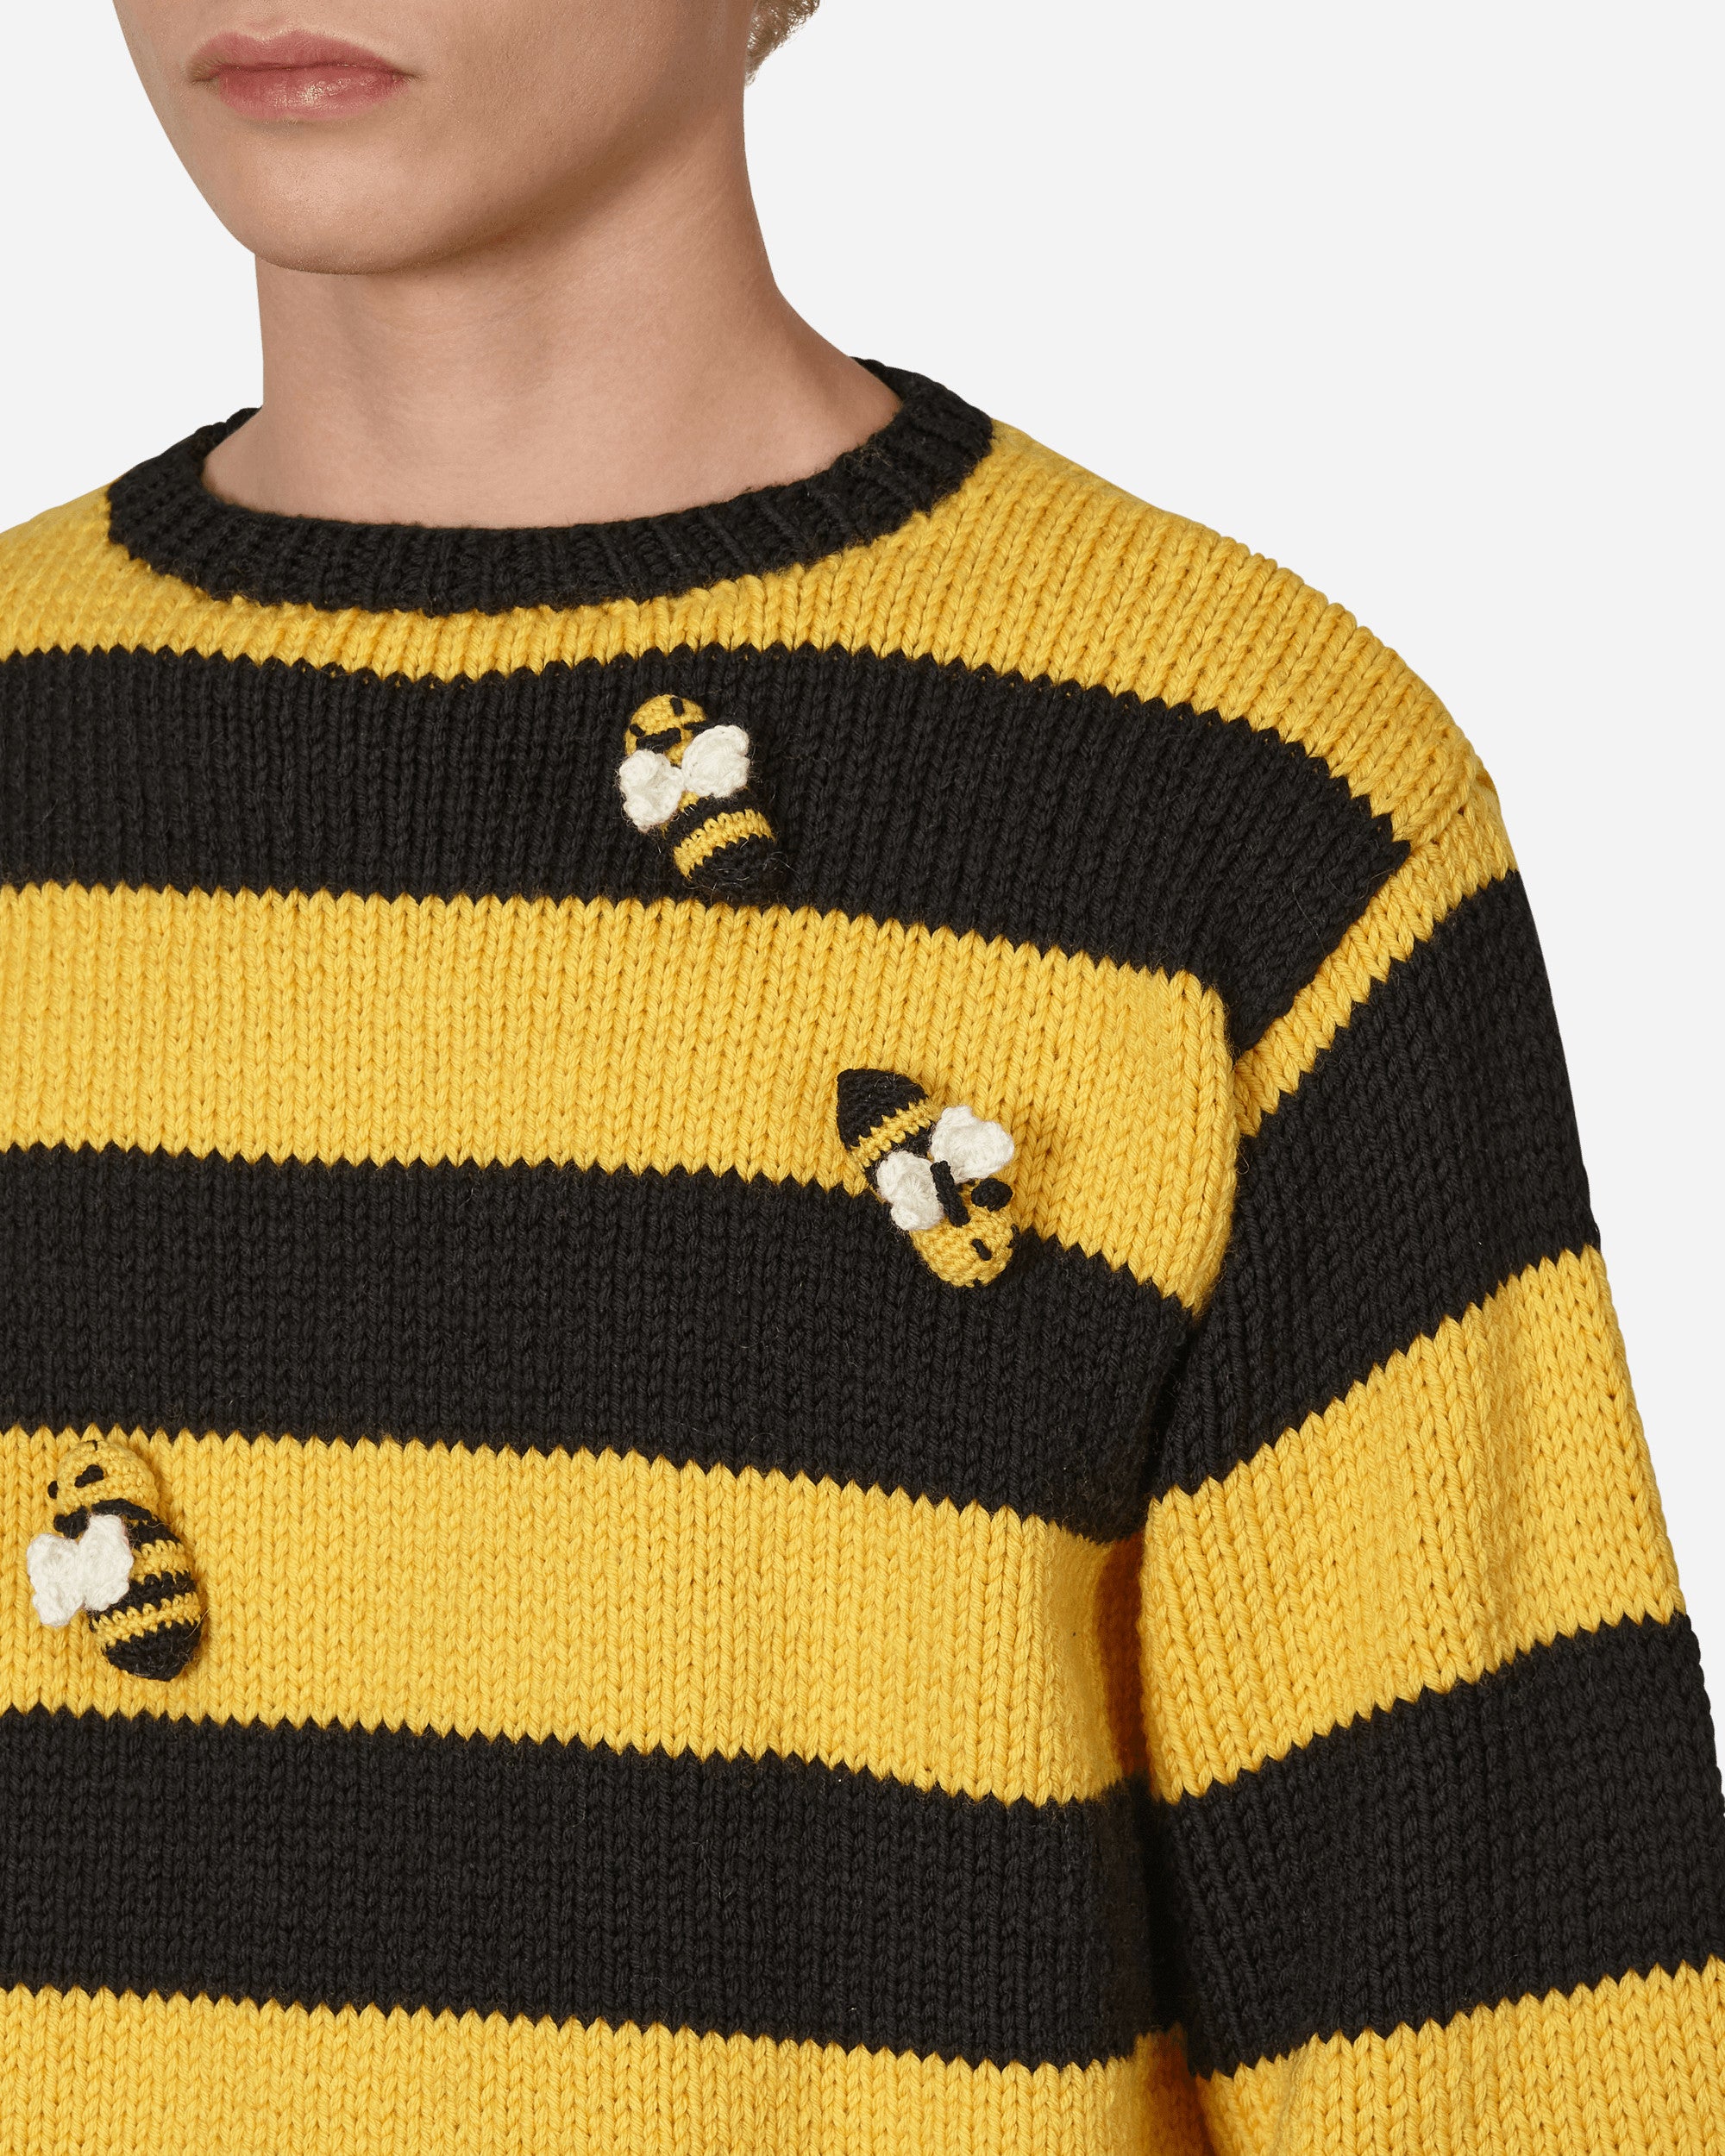 Sky High Farm Hand Knit Bee Sweater Knit Black/Yellow Knitwears Sweaters SHF02N003 1